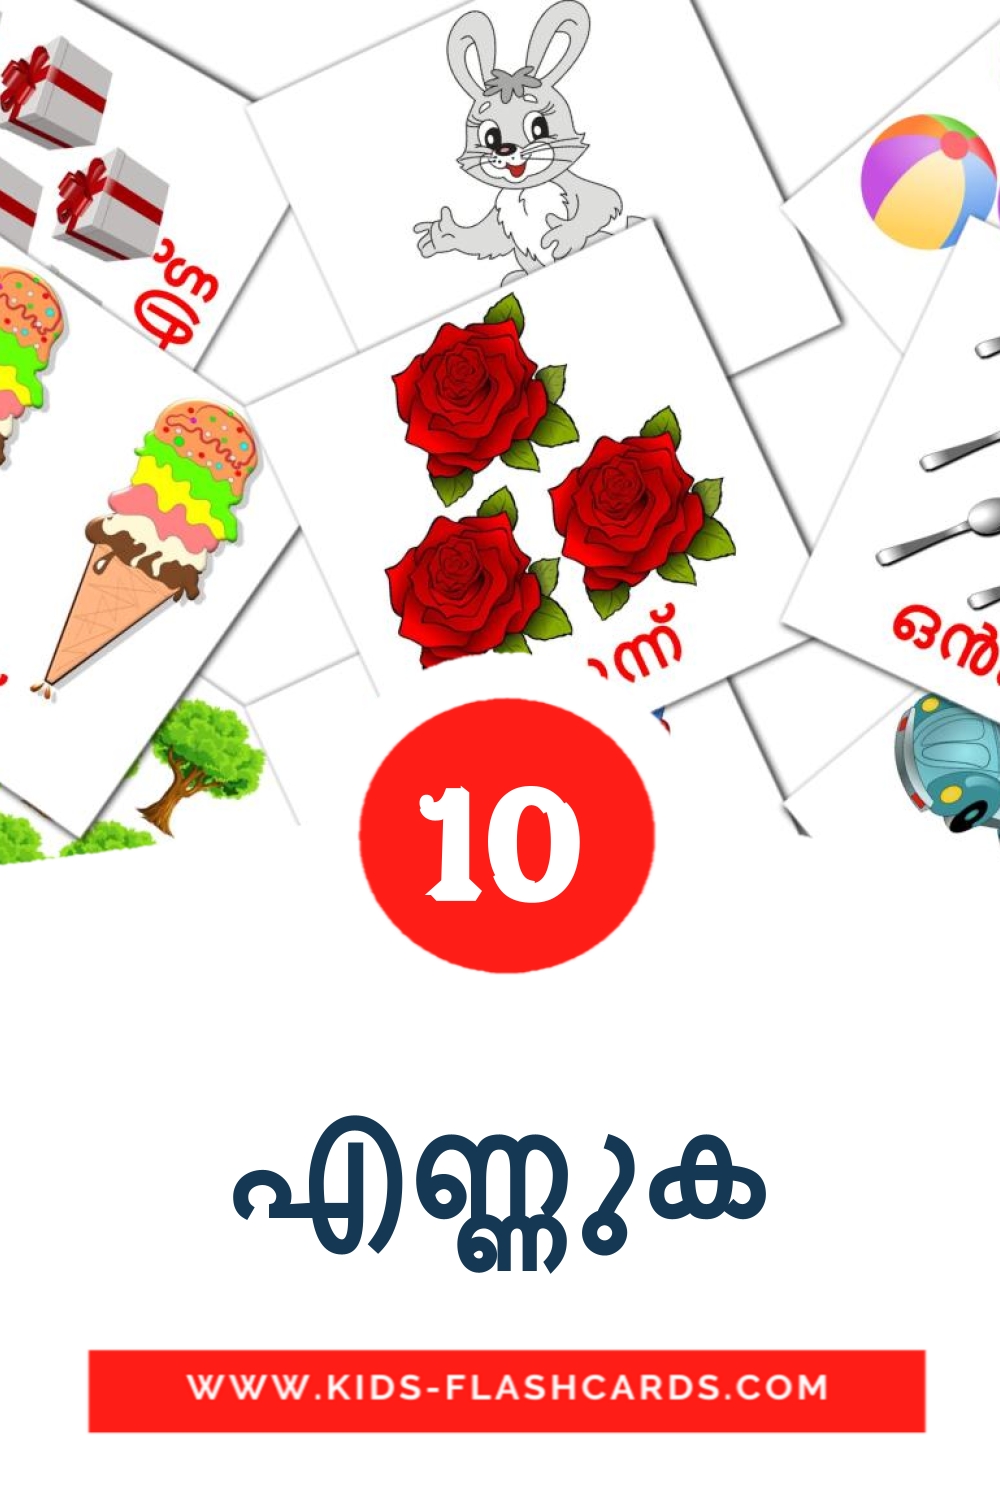 10 എണ്ണുക fotokaarten voor kleuters in het malayalam